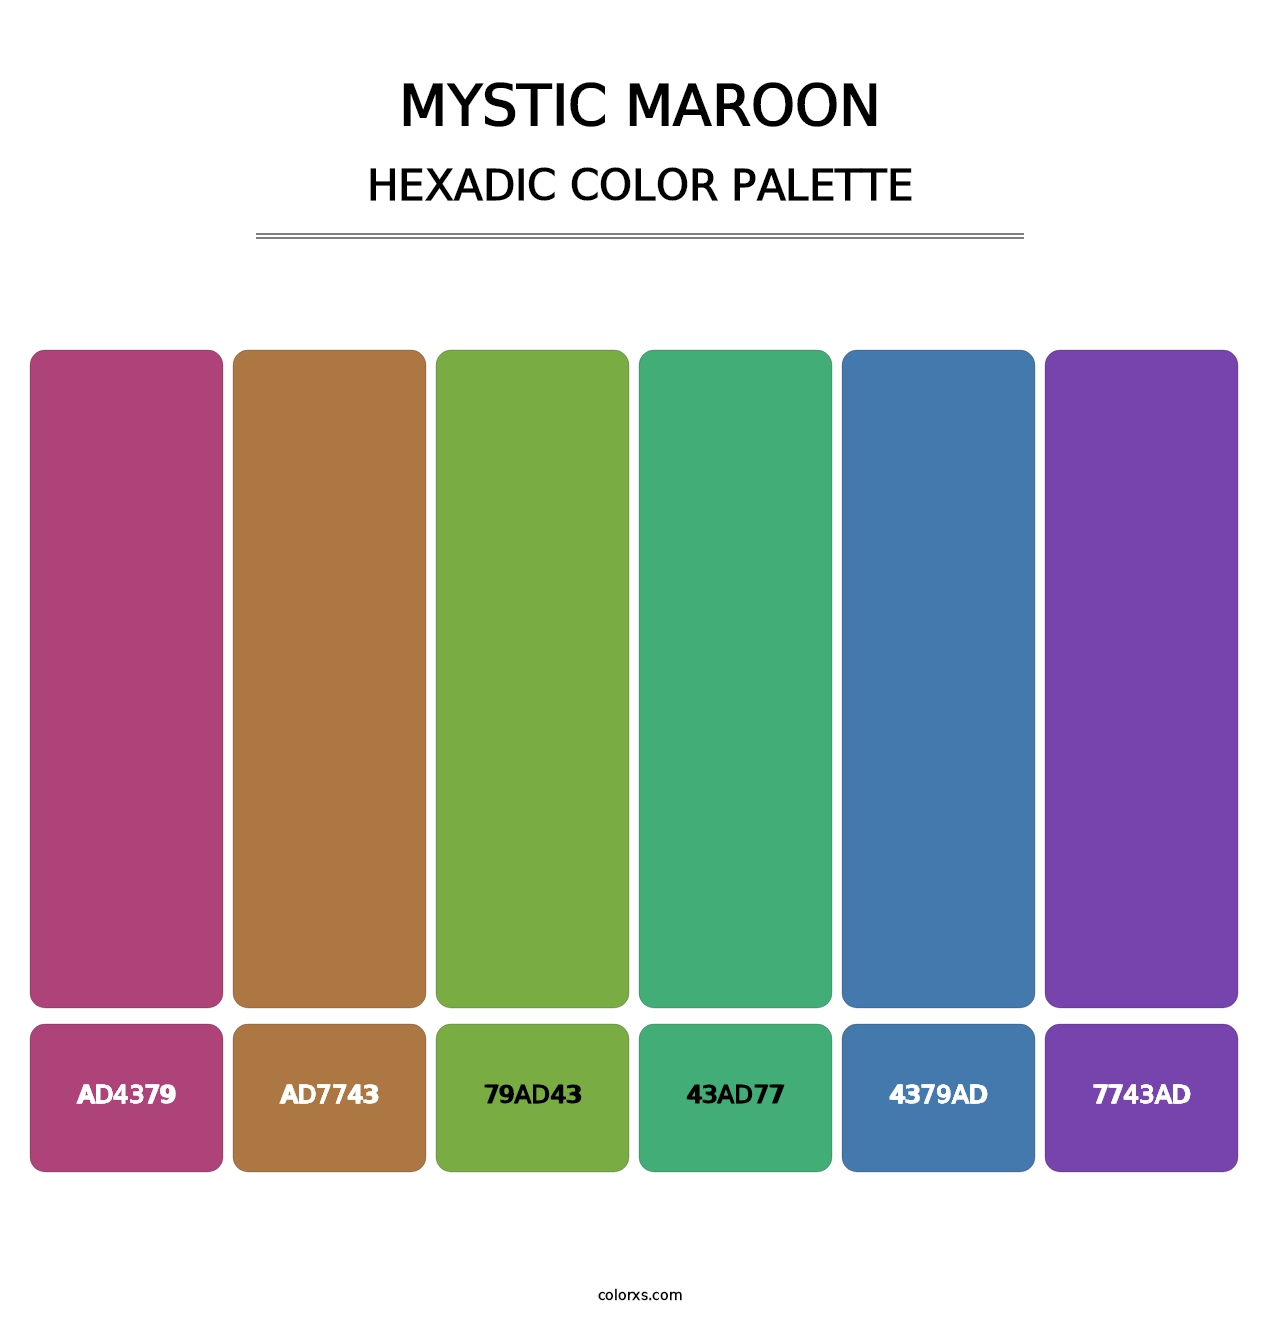 Mystic Maroon - Hexadic Color Palette